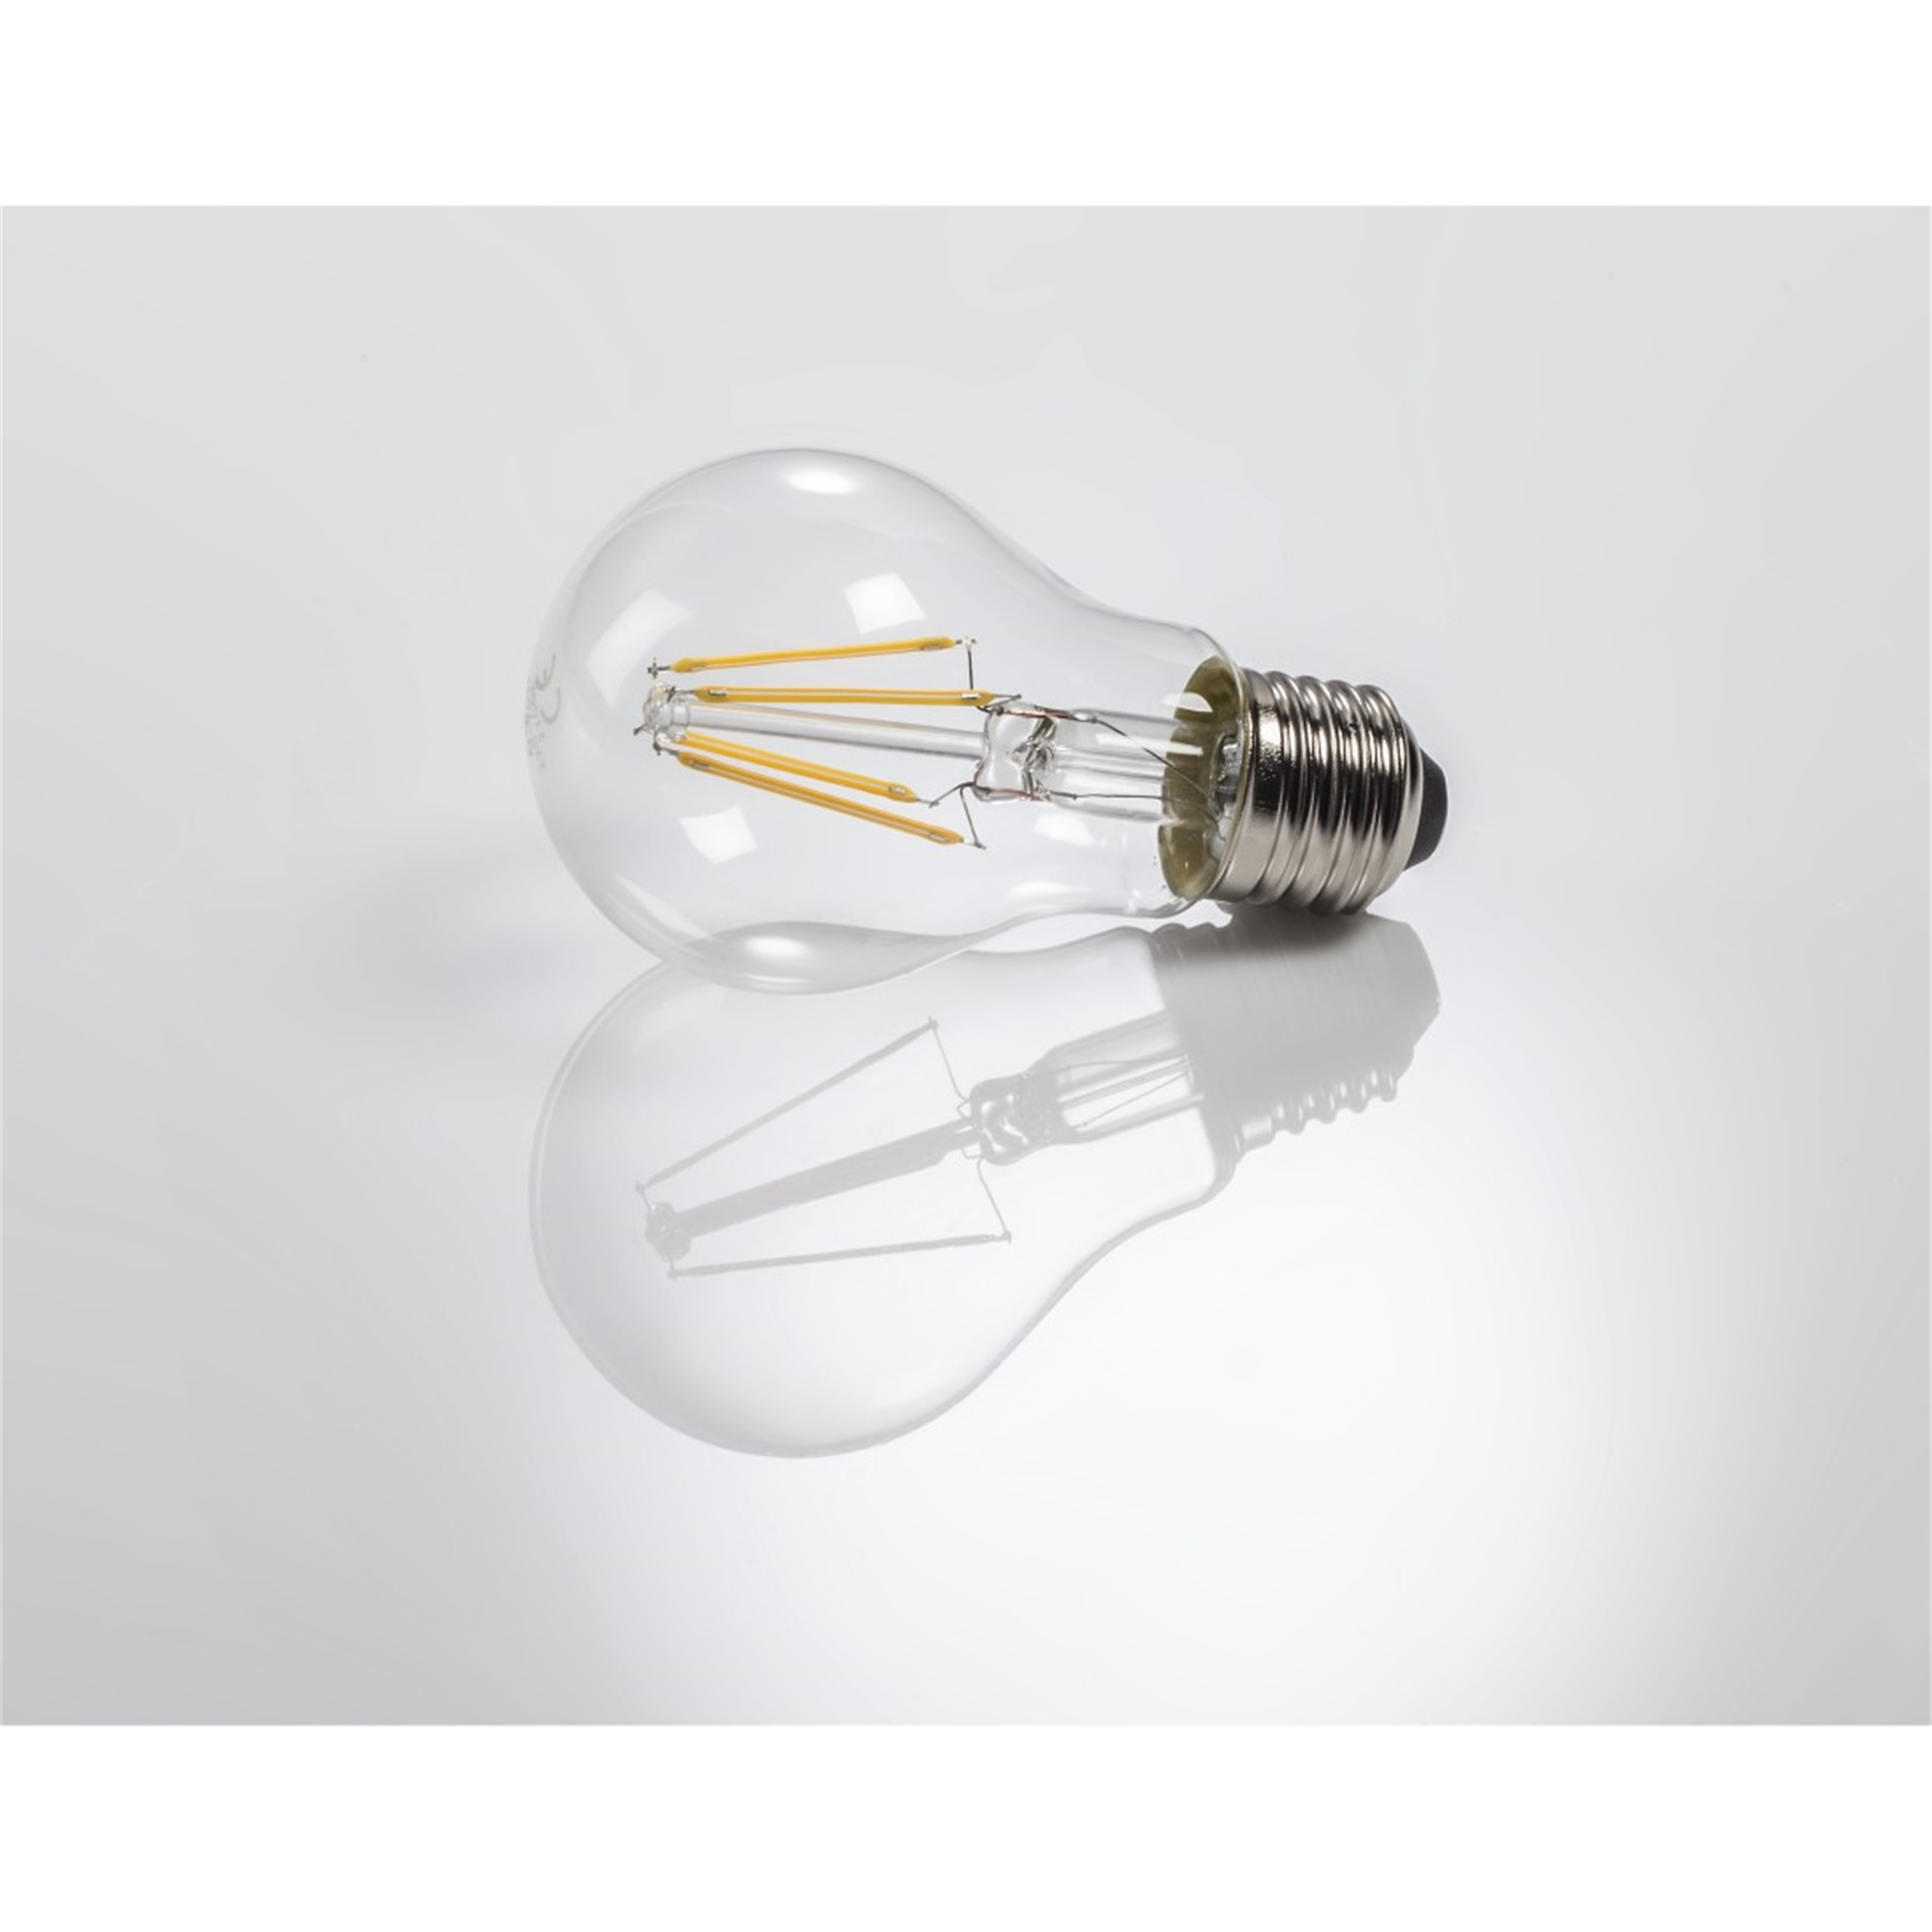 XAVAX E27, LED-Lampe Warmweiß 806lm E27 60W ersetzt